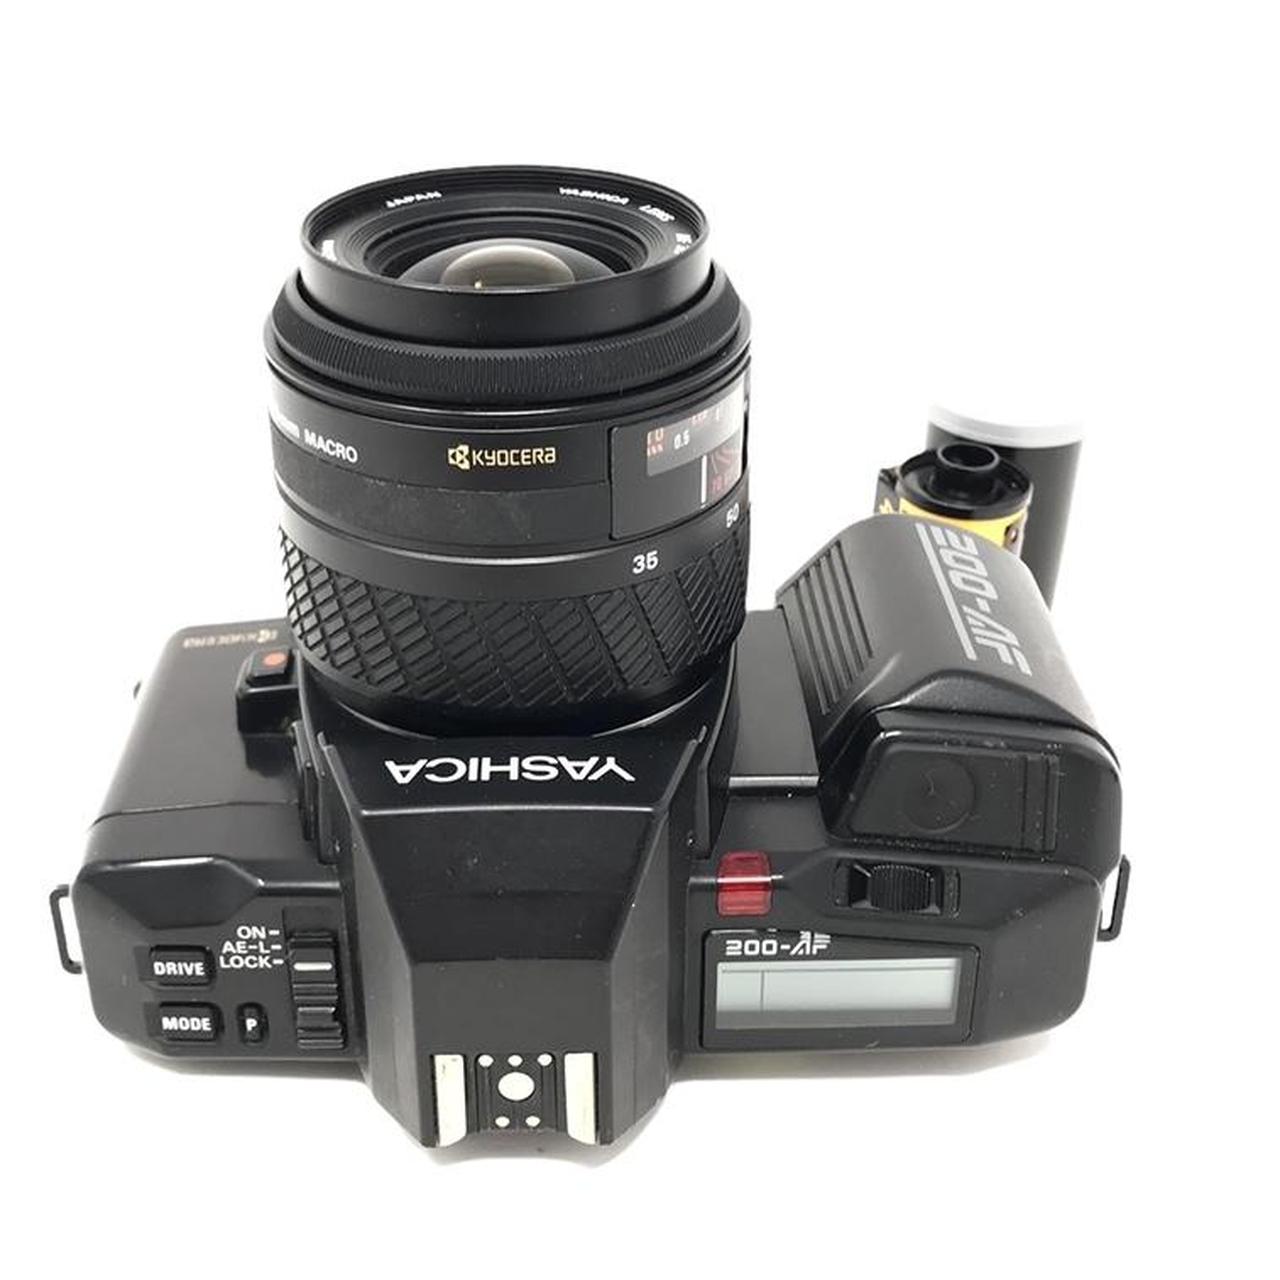 Product Image 2 - Yashica 200-AF 35mm Film Camera

Comes